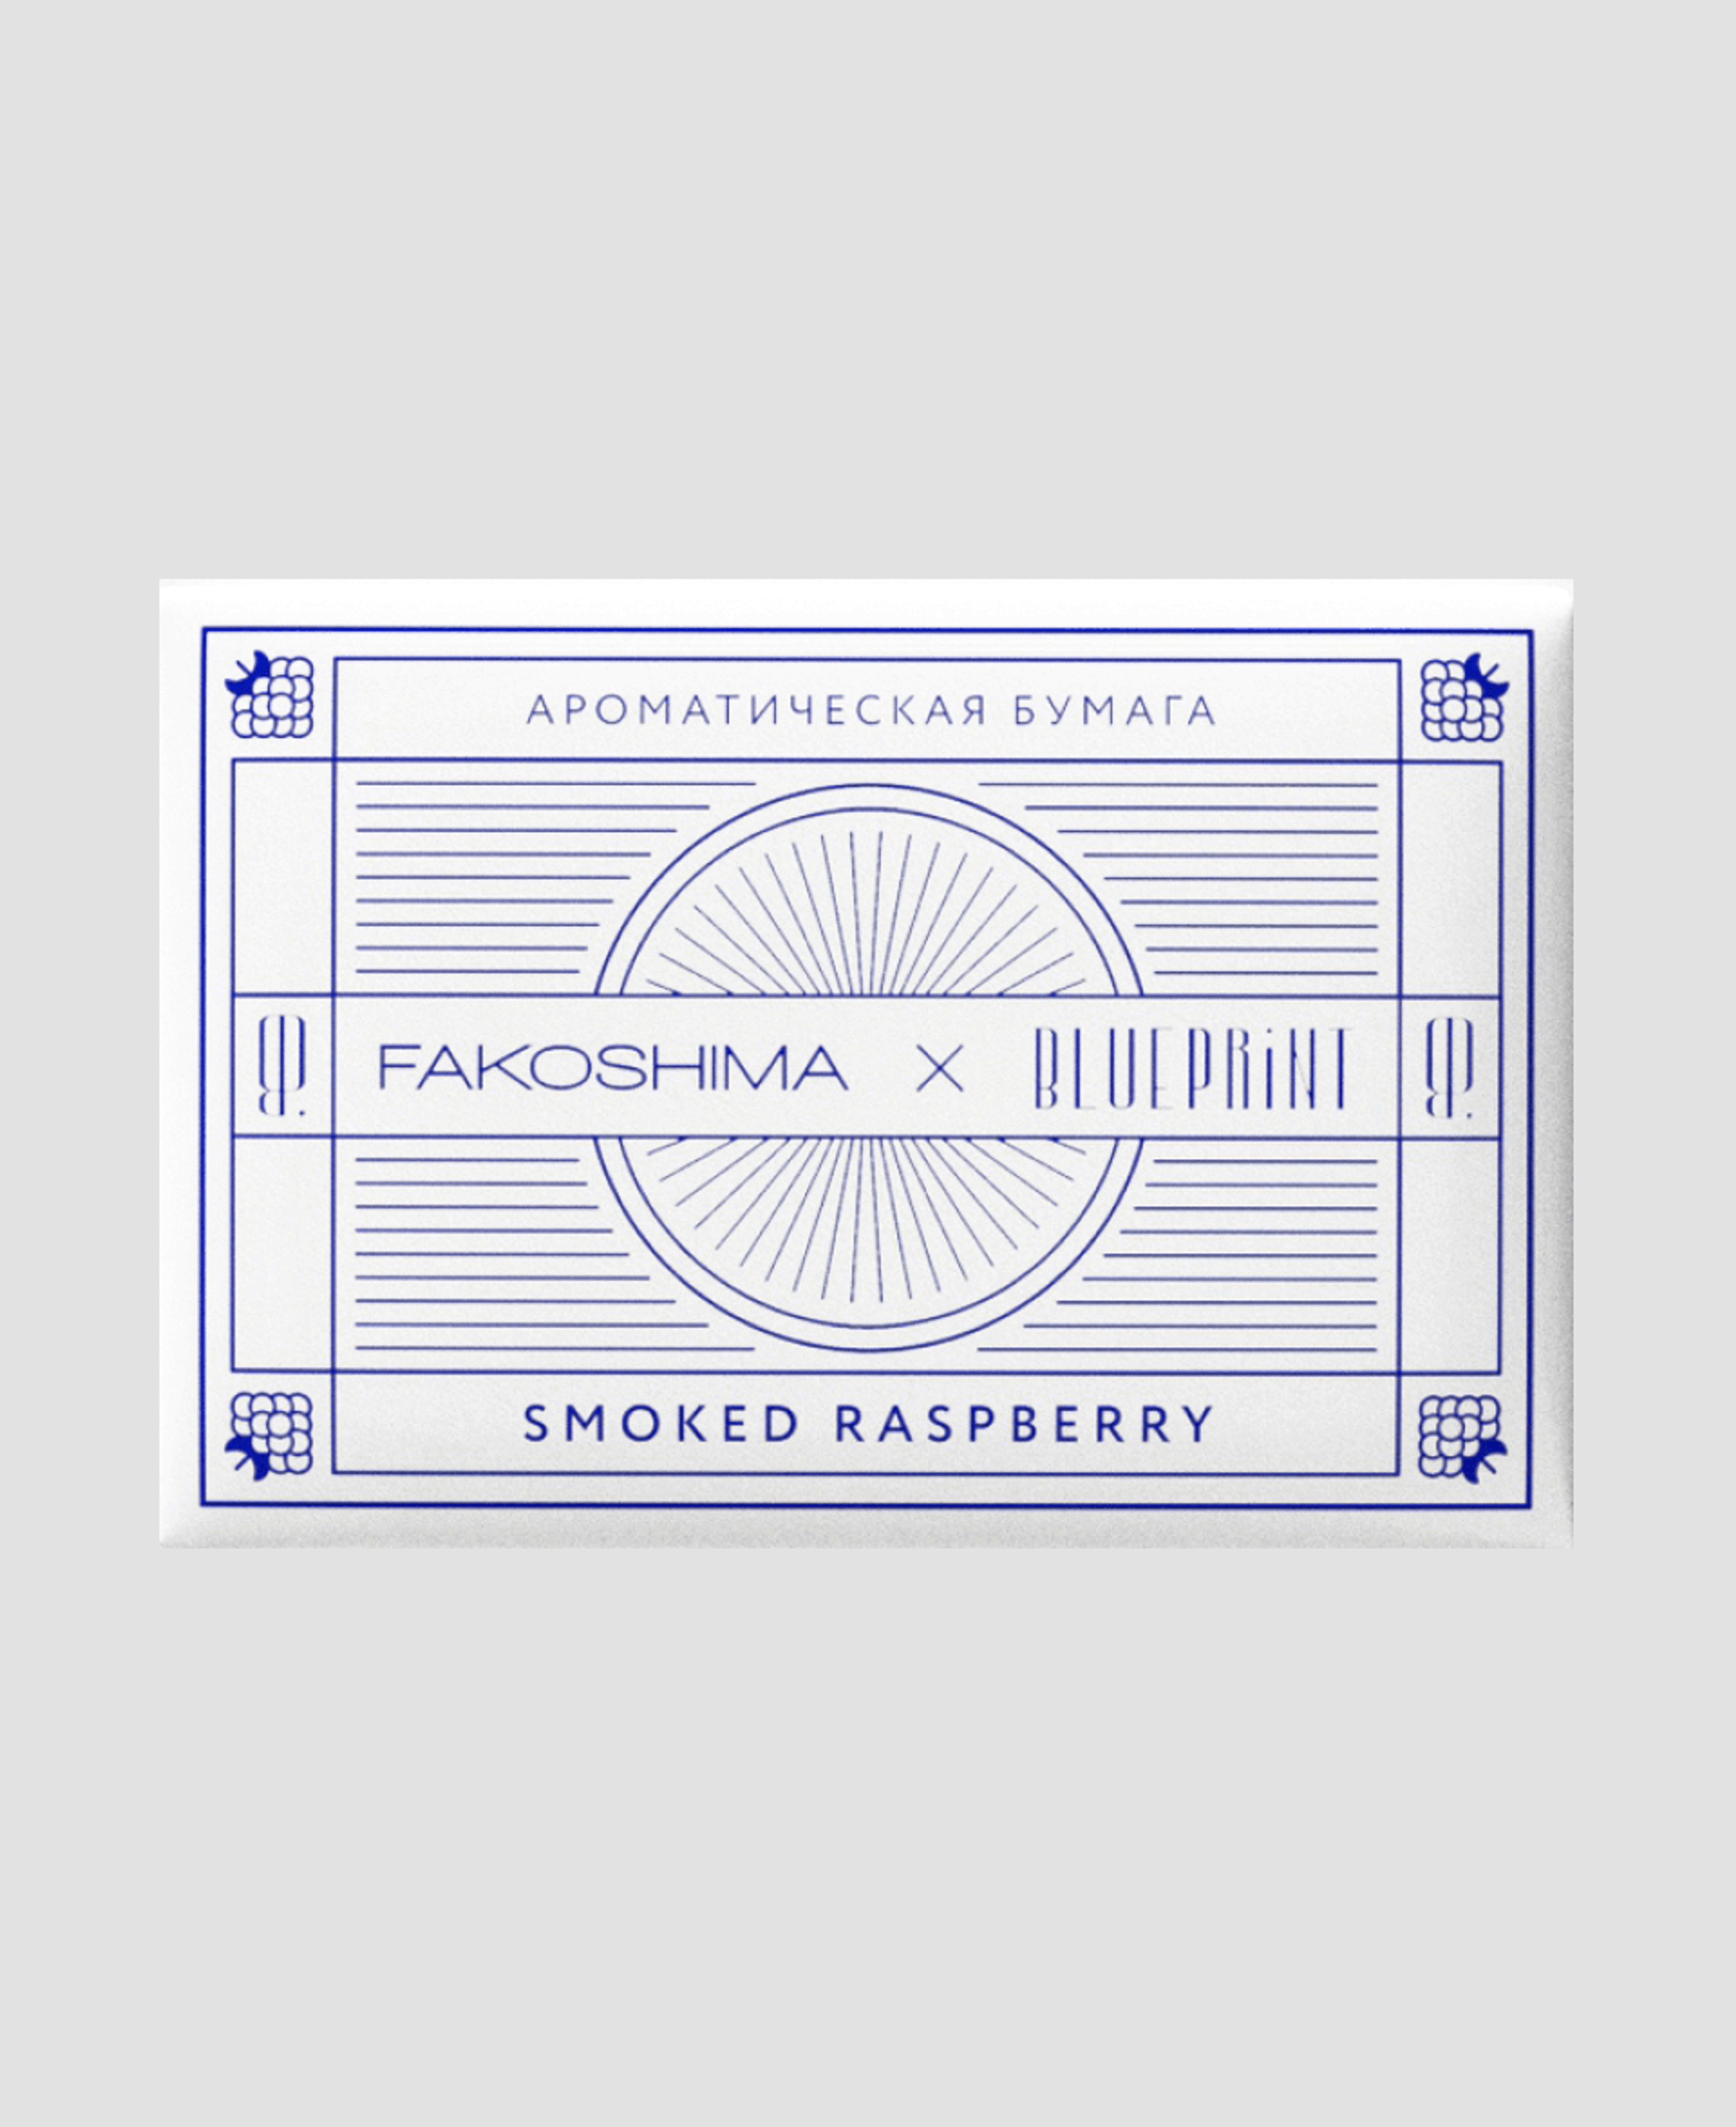 Ароматическая бумага Fakoshina × Blueprint 